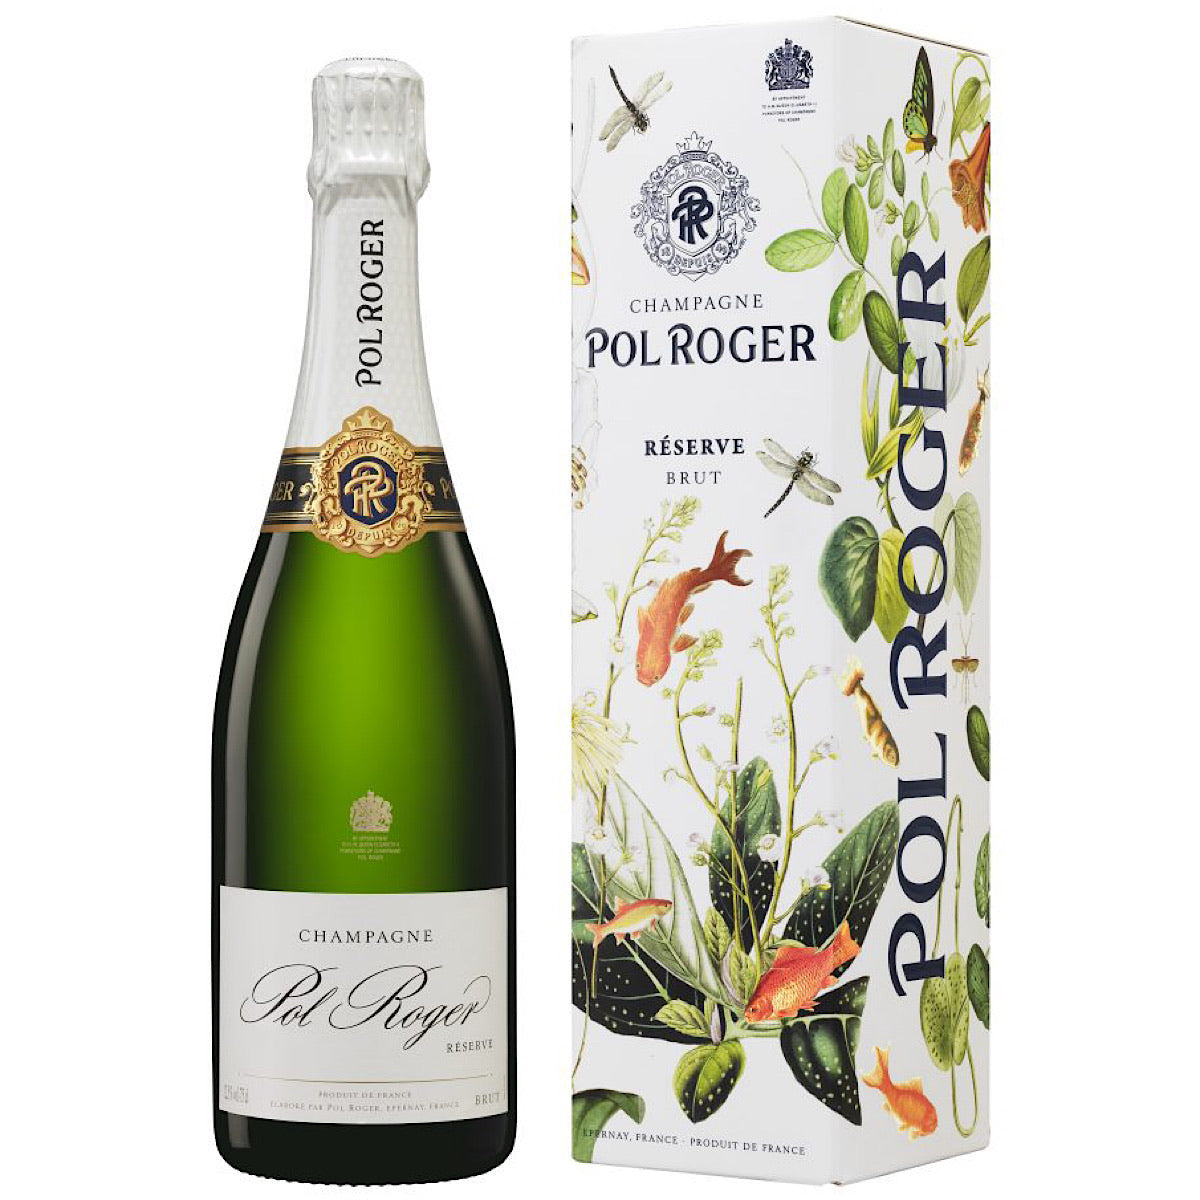 Pol Roger Brut Reserve NV Champagne Gift box 12 Bottle Case 75cl